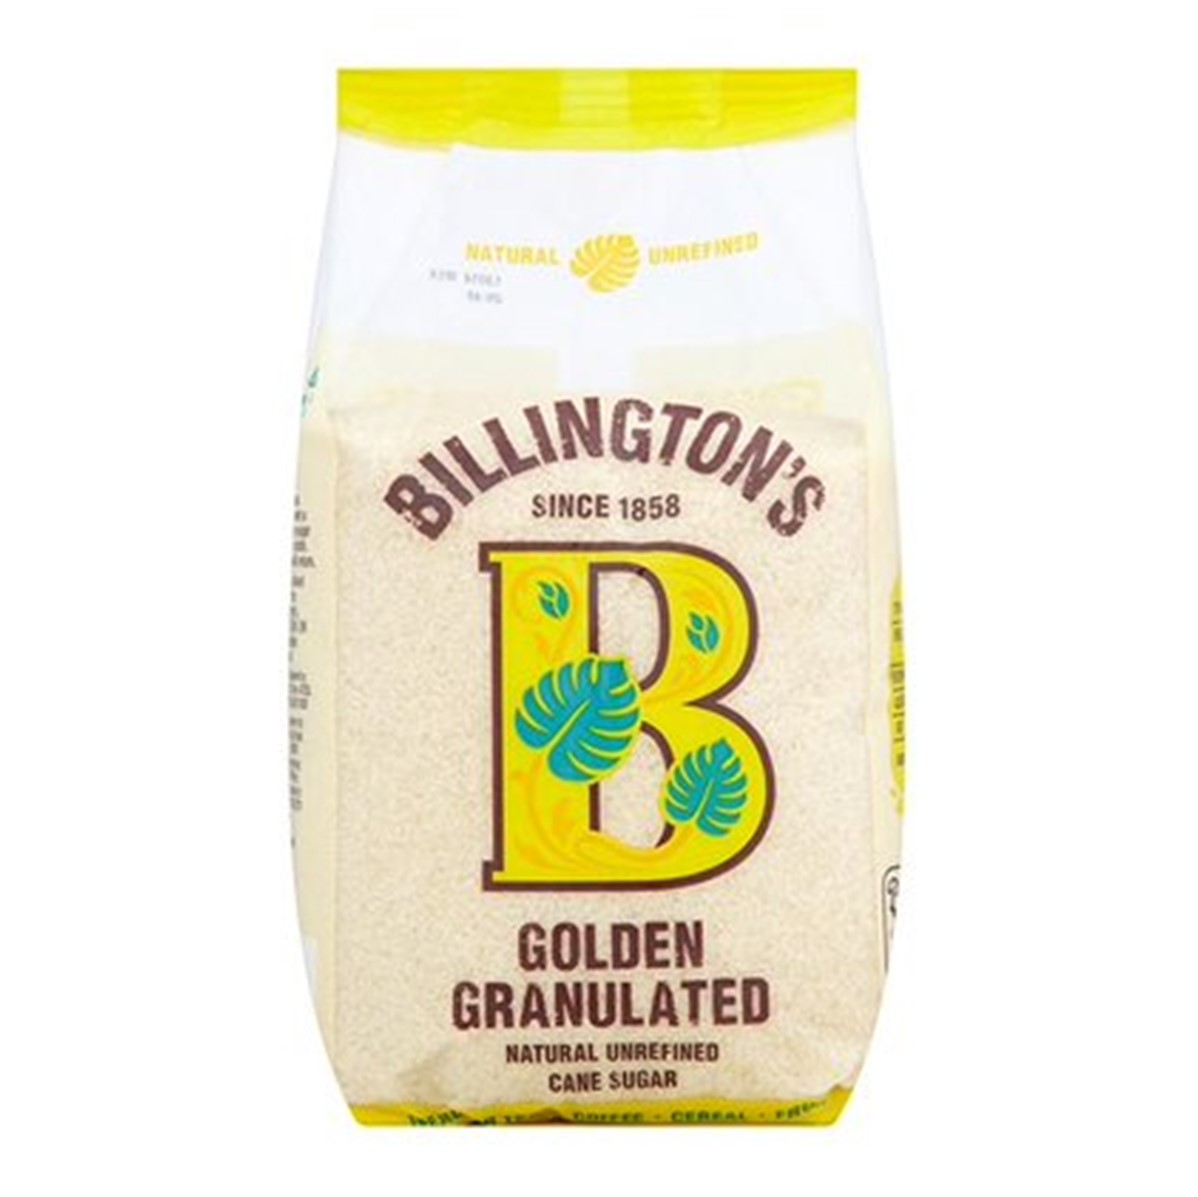 Billington's Golden Granulated Sugar - 1kg bag